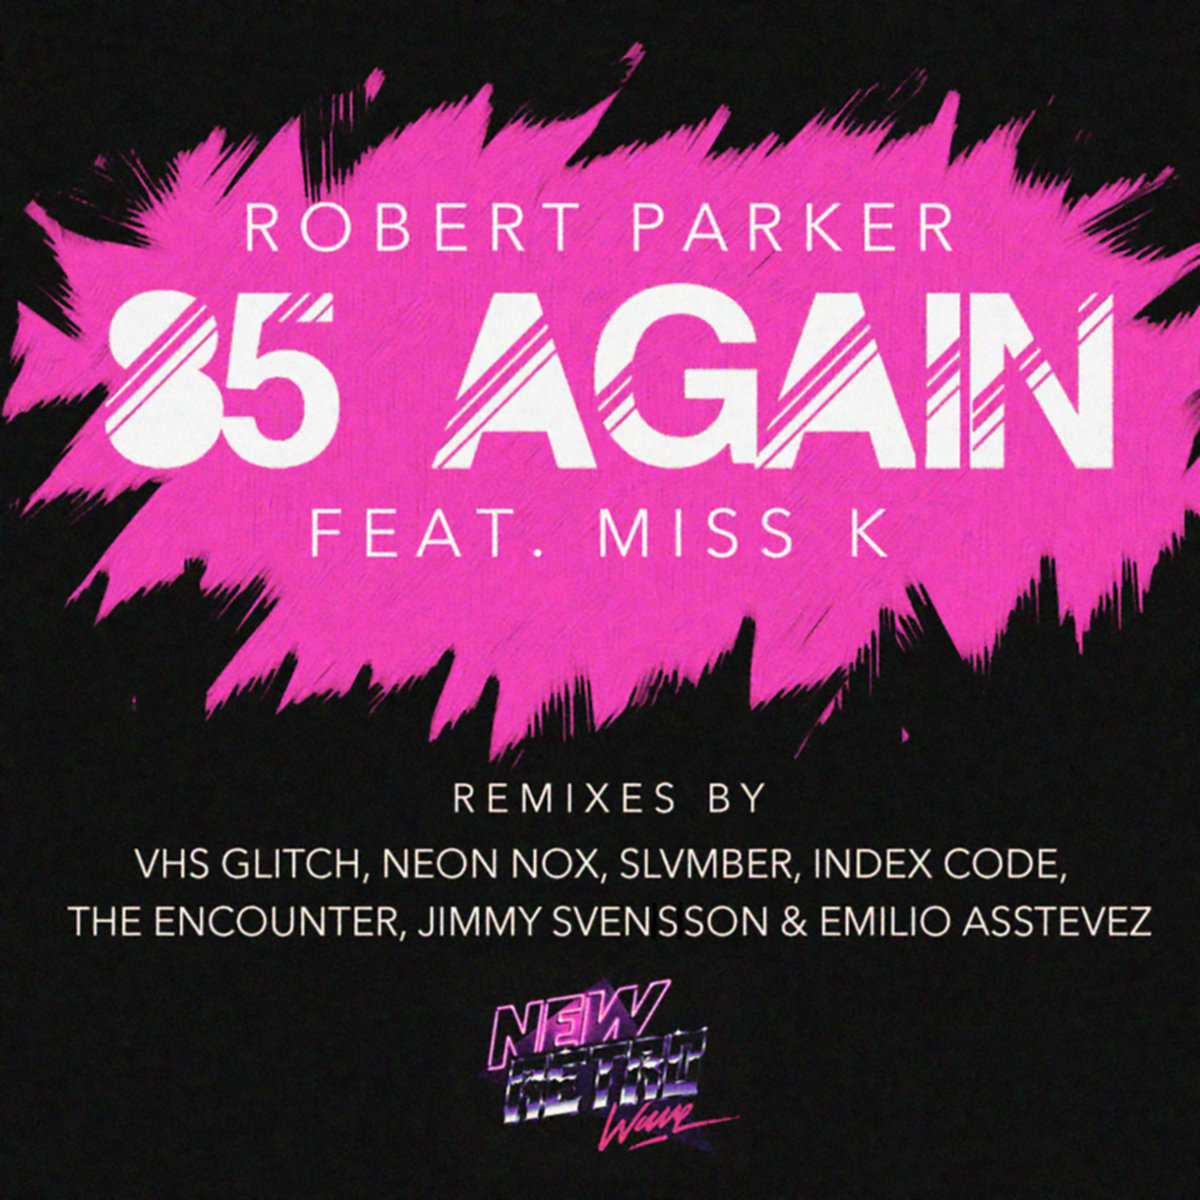 Remix mp 3. Robert Parker Miss k. Robert Parker Miss k 85. Robert Parker, Miss k 85 again. '85 Again (feat. Miss k) Robert Parker.